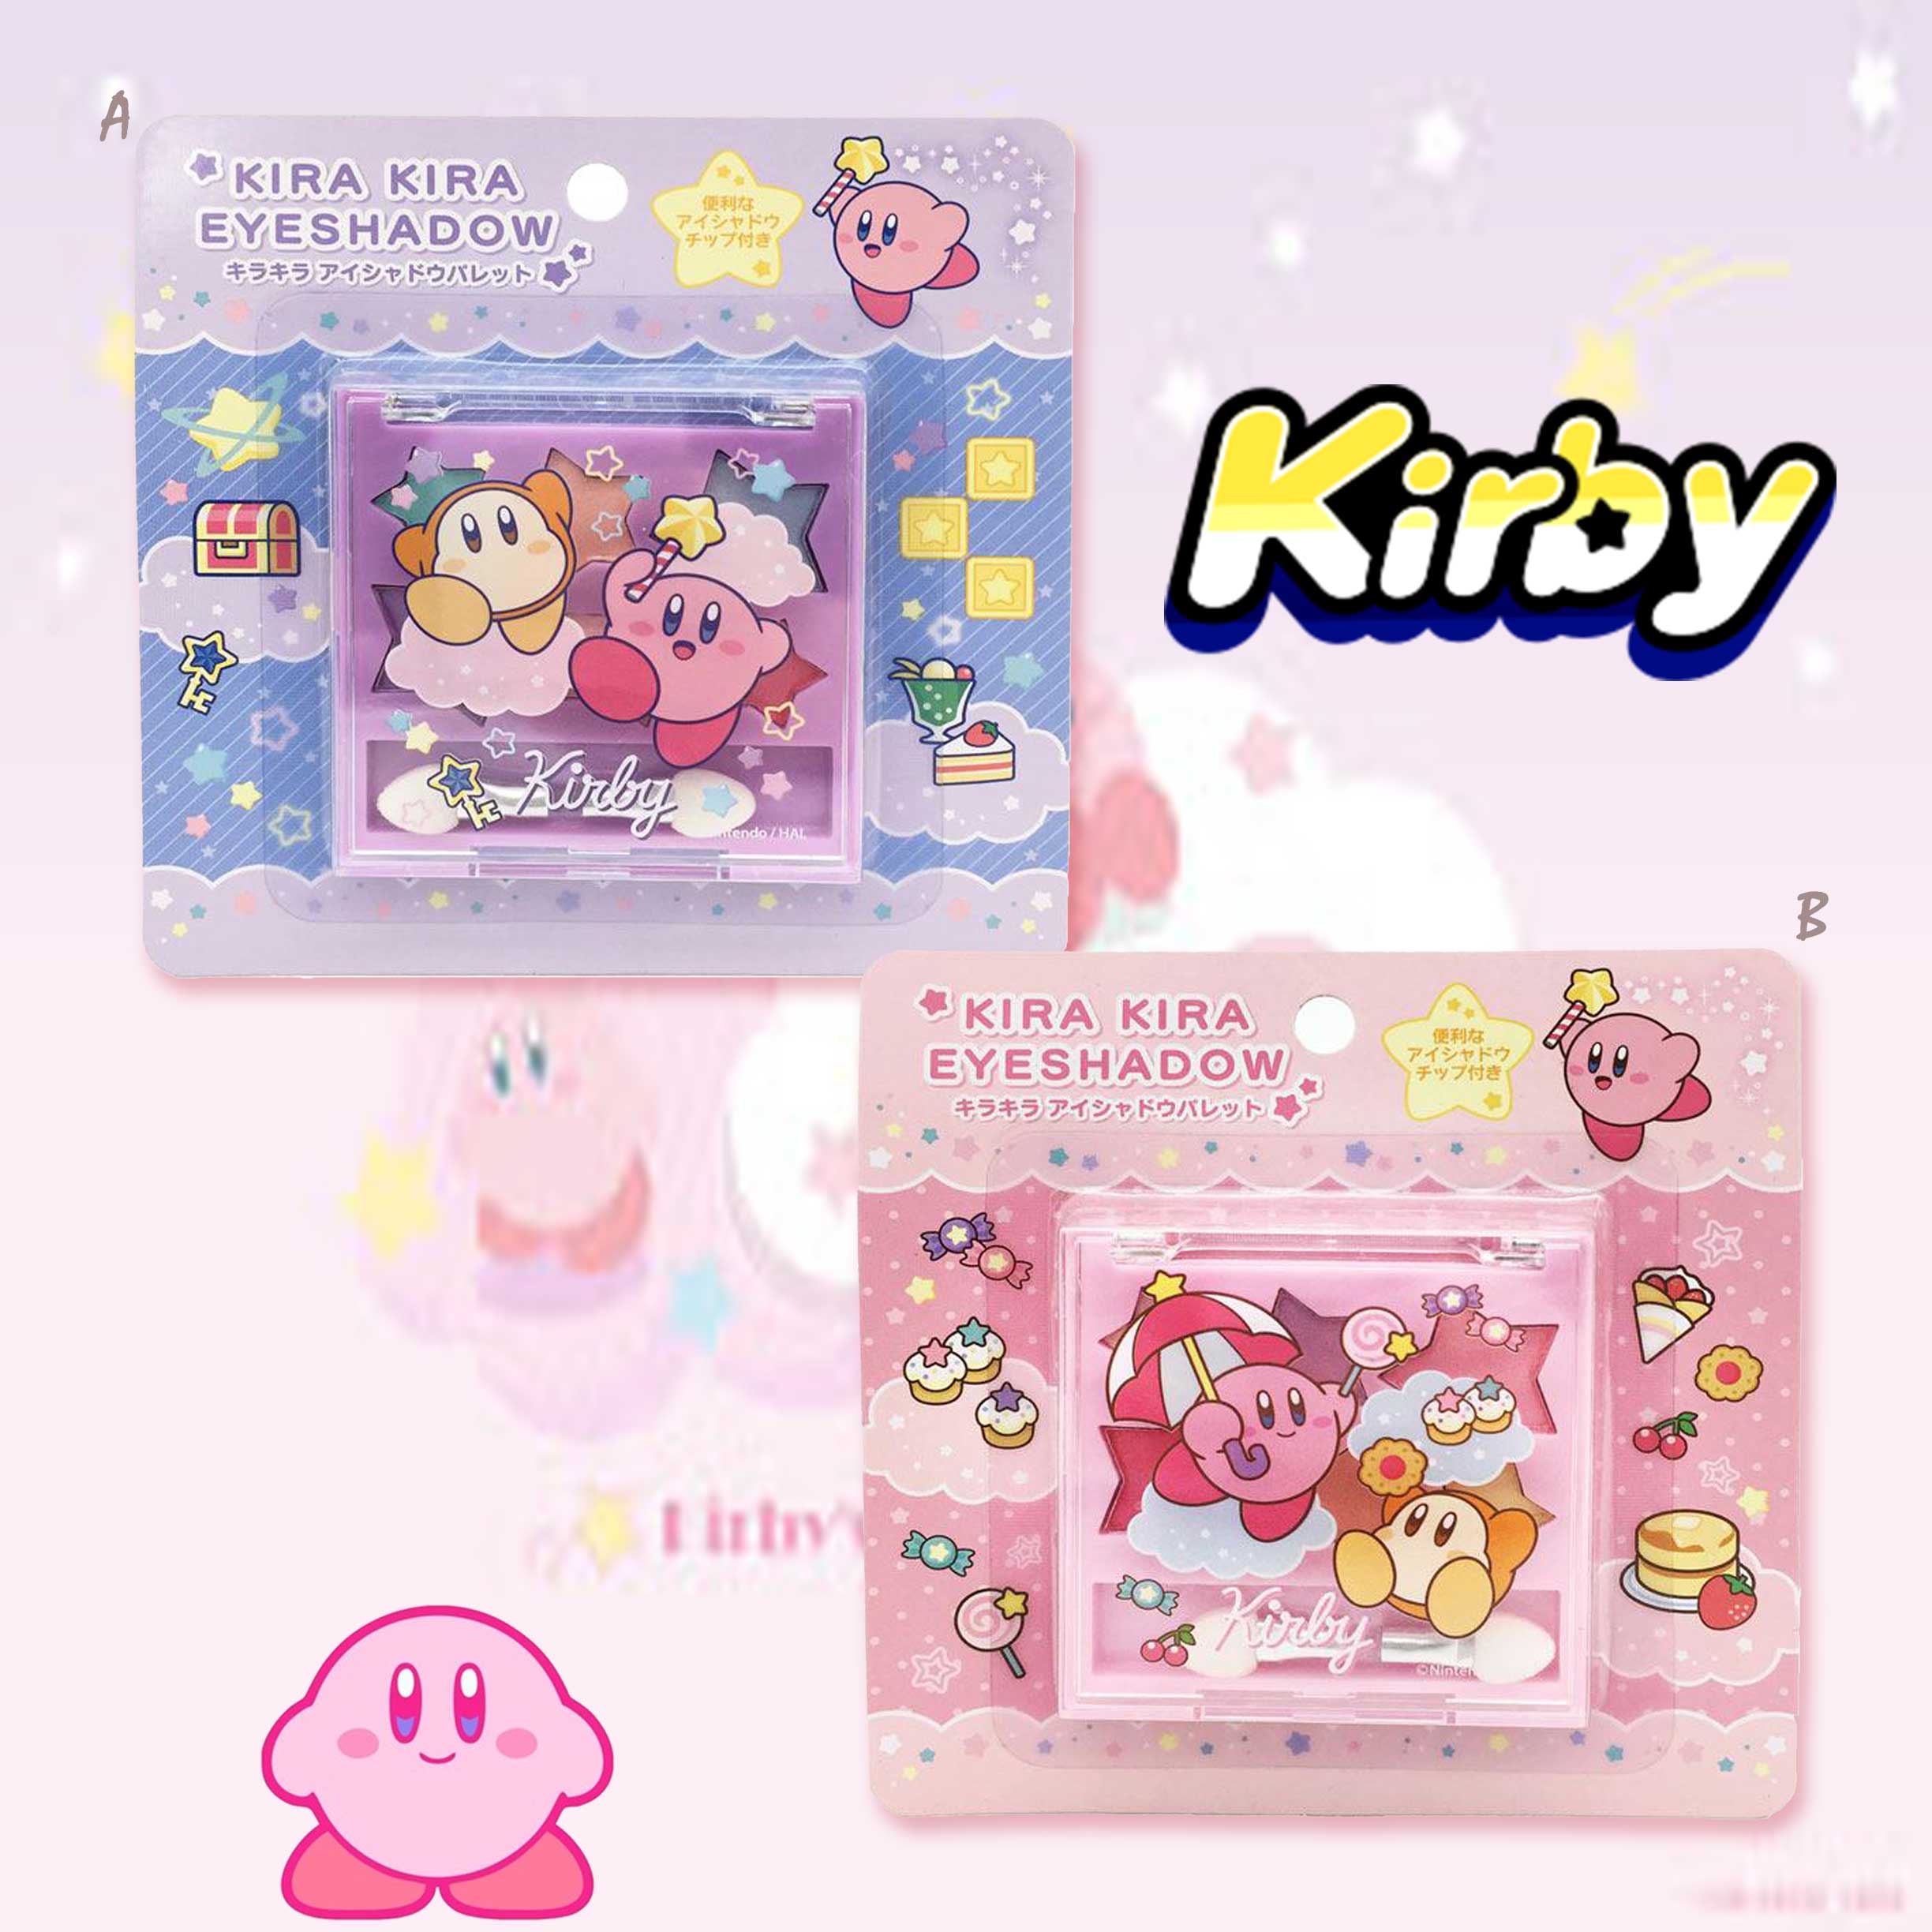 閃光眼影盤-Kirby 星之卡比 日本進口正版授權